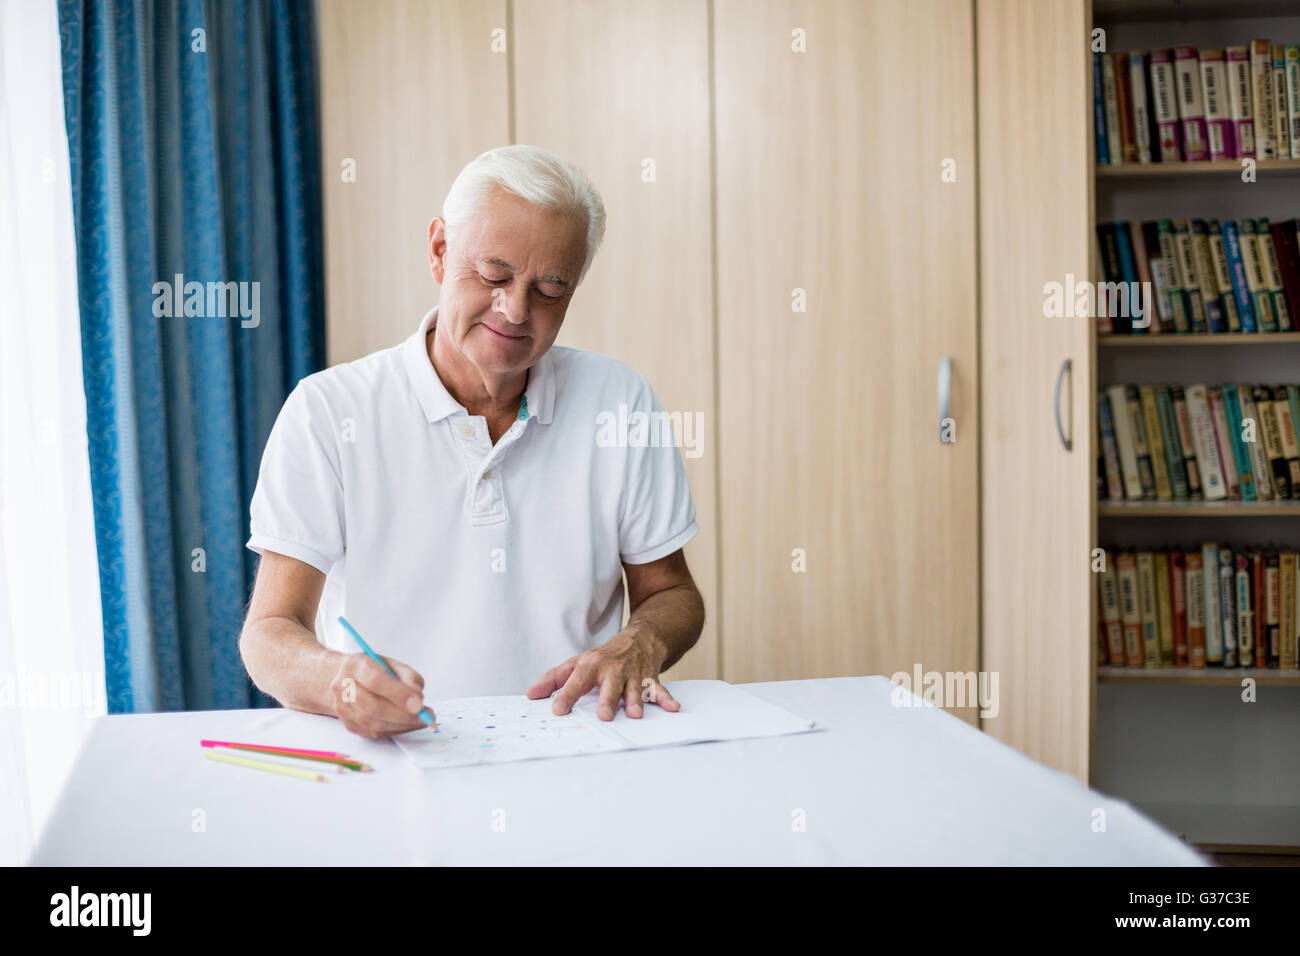 Senior man using a colouring book Stock Photo